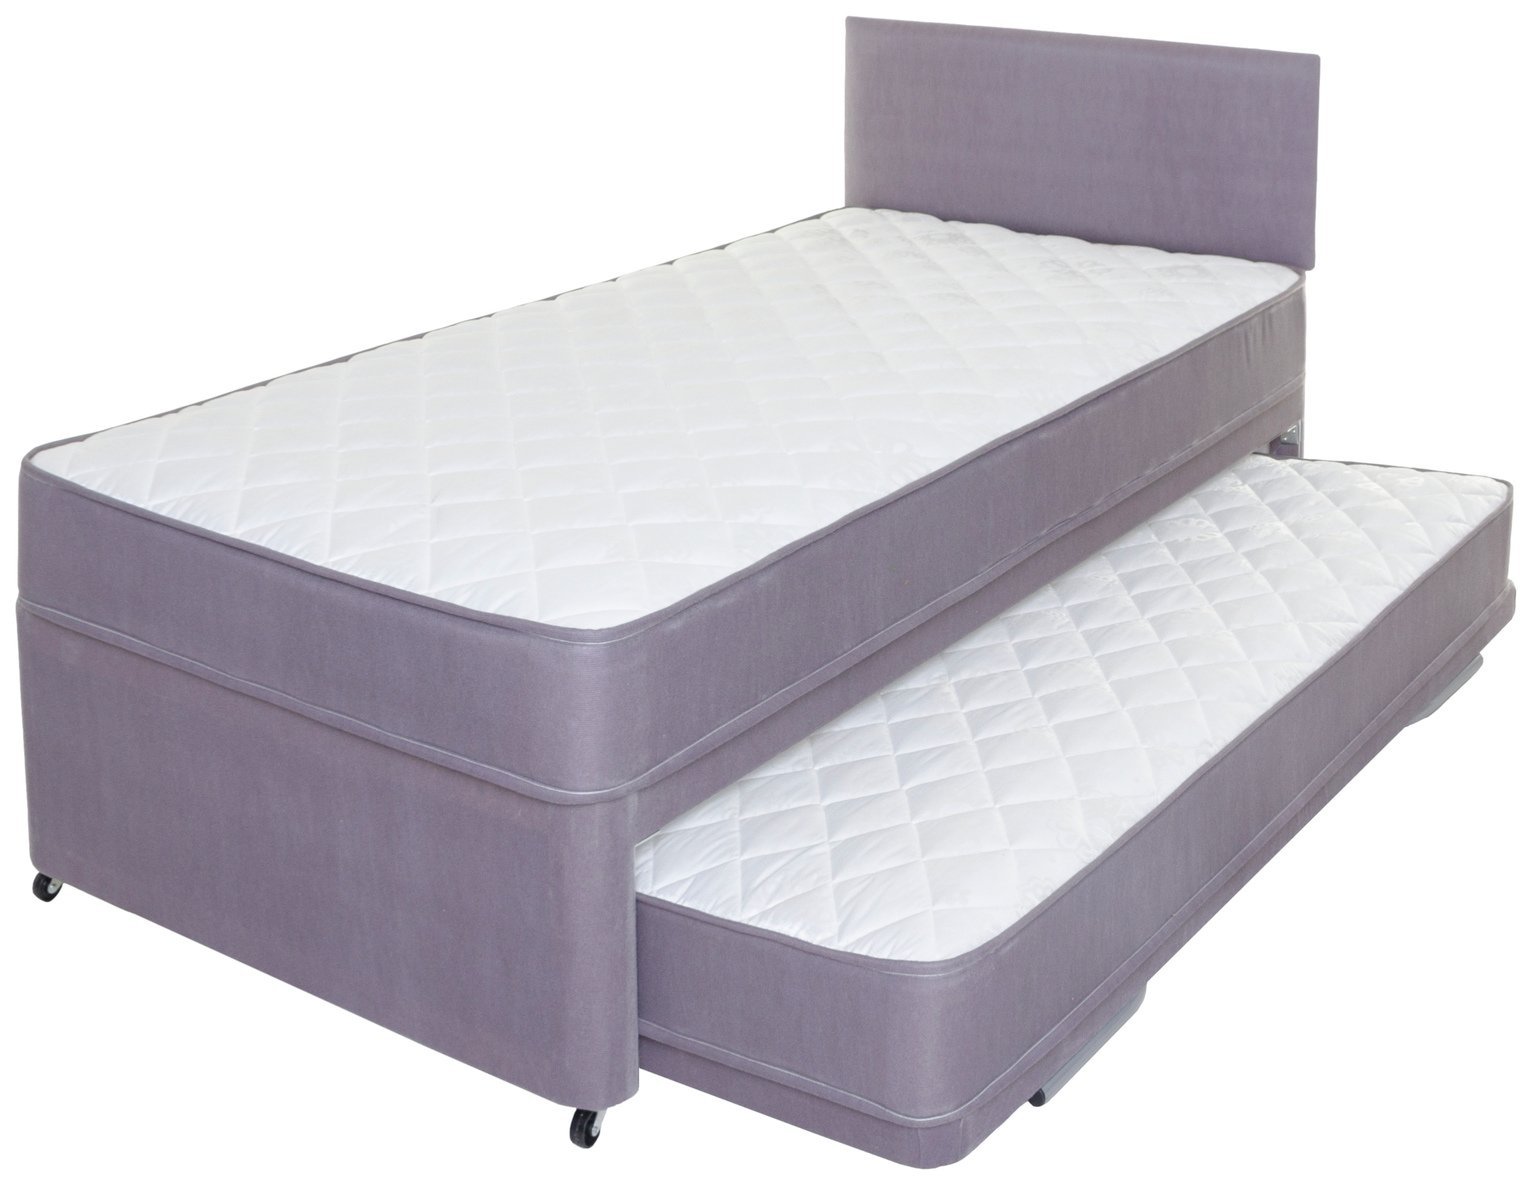 guest bed mattress argos